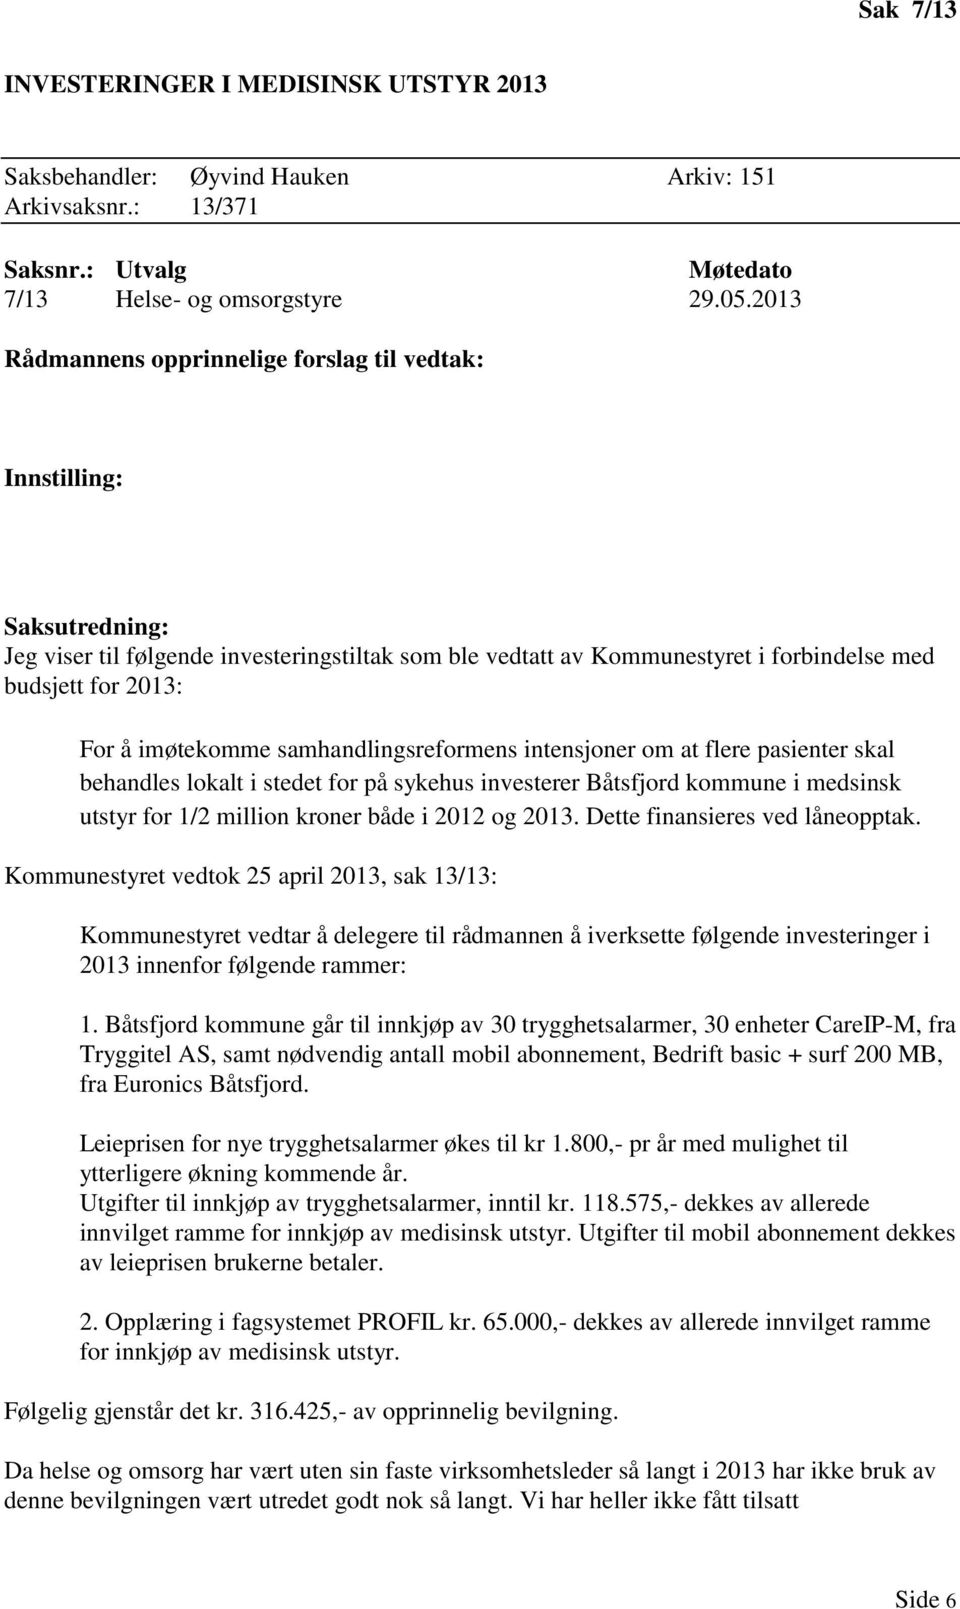 imøtekomme samhandlingsreformens intensjoner om at flere pasienter skal behandles lokalt i stedet for på sykehus investerer Båtsfjord kommune i medsinsk utstyr for 1/2 million kroner både i 2012 og